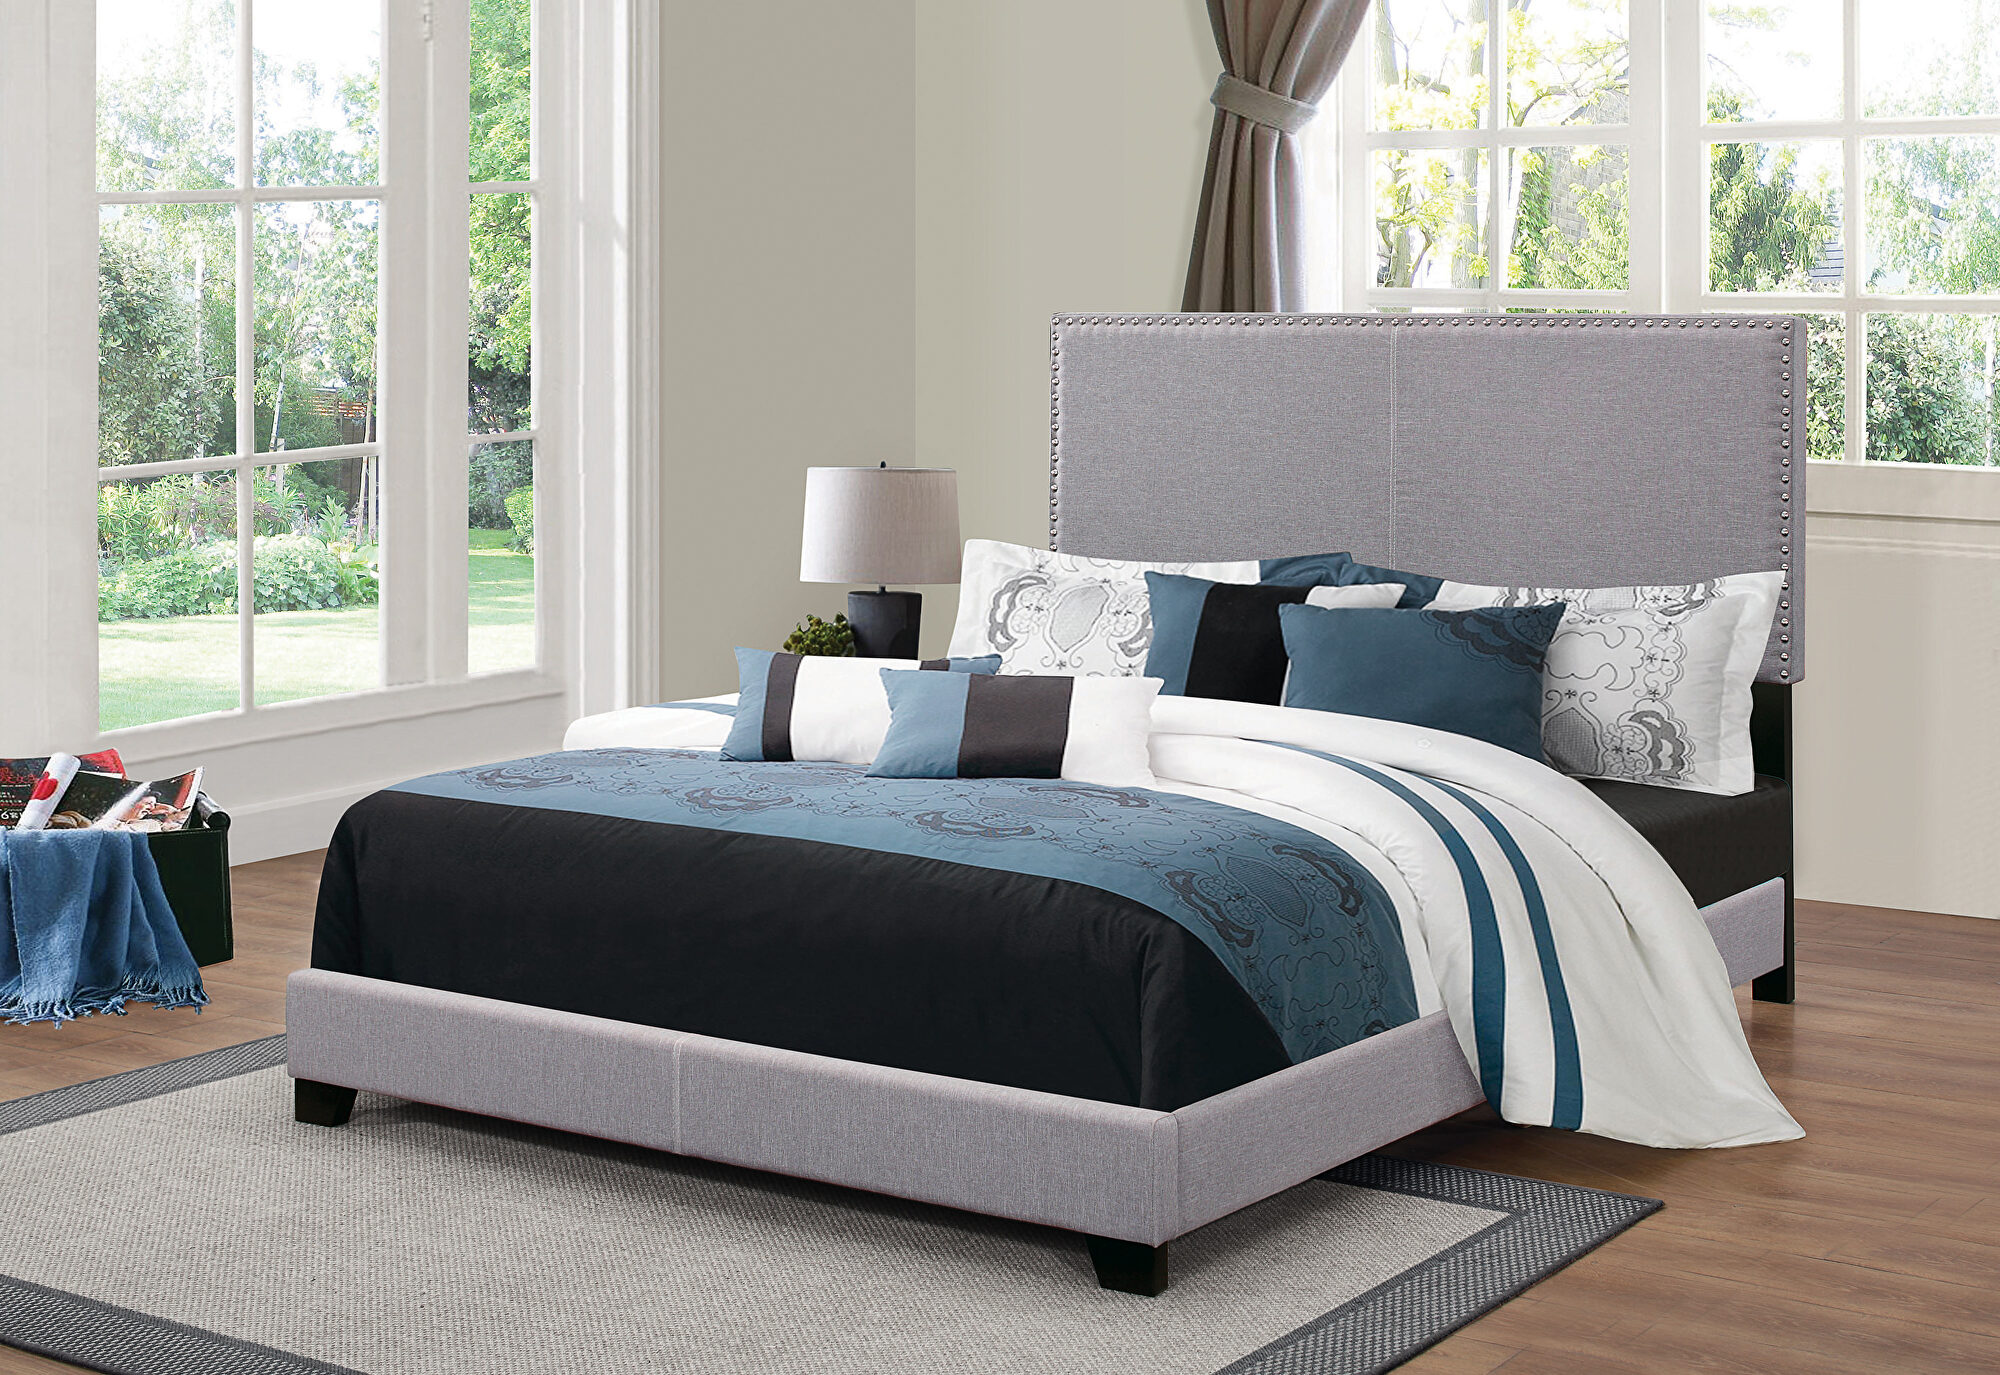 Кровать для полных. Кровать полностью. Upholstered Bed. Upholstered Furniture website. Рейтинг качества кроватей